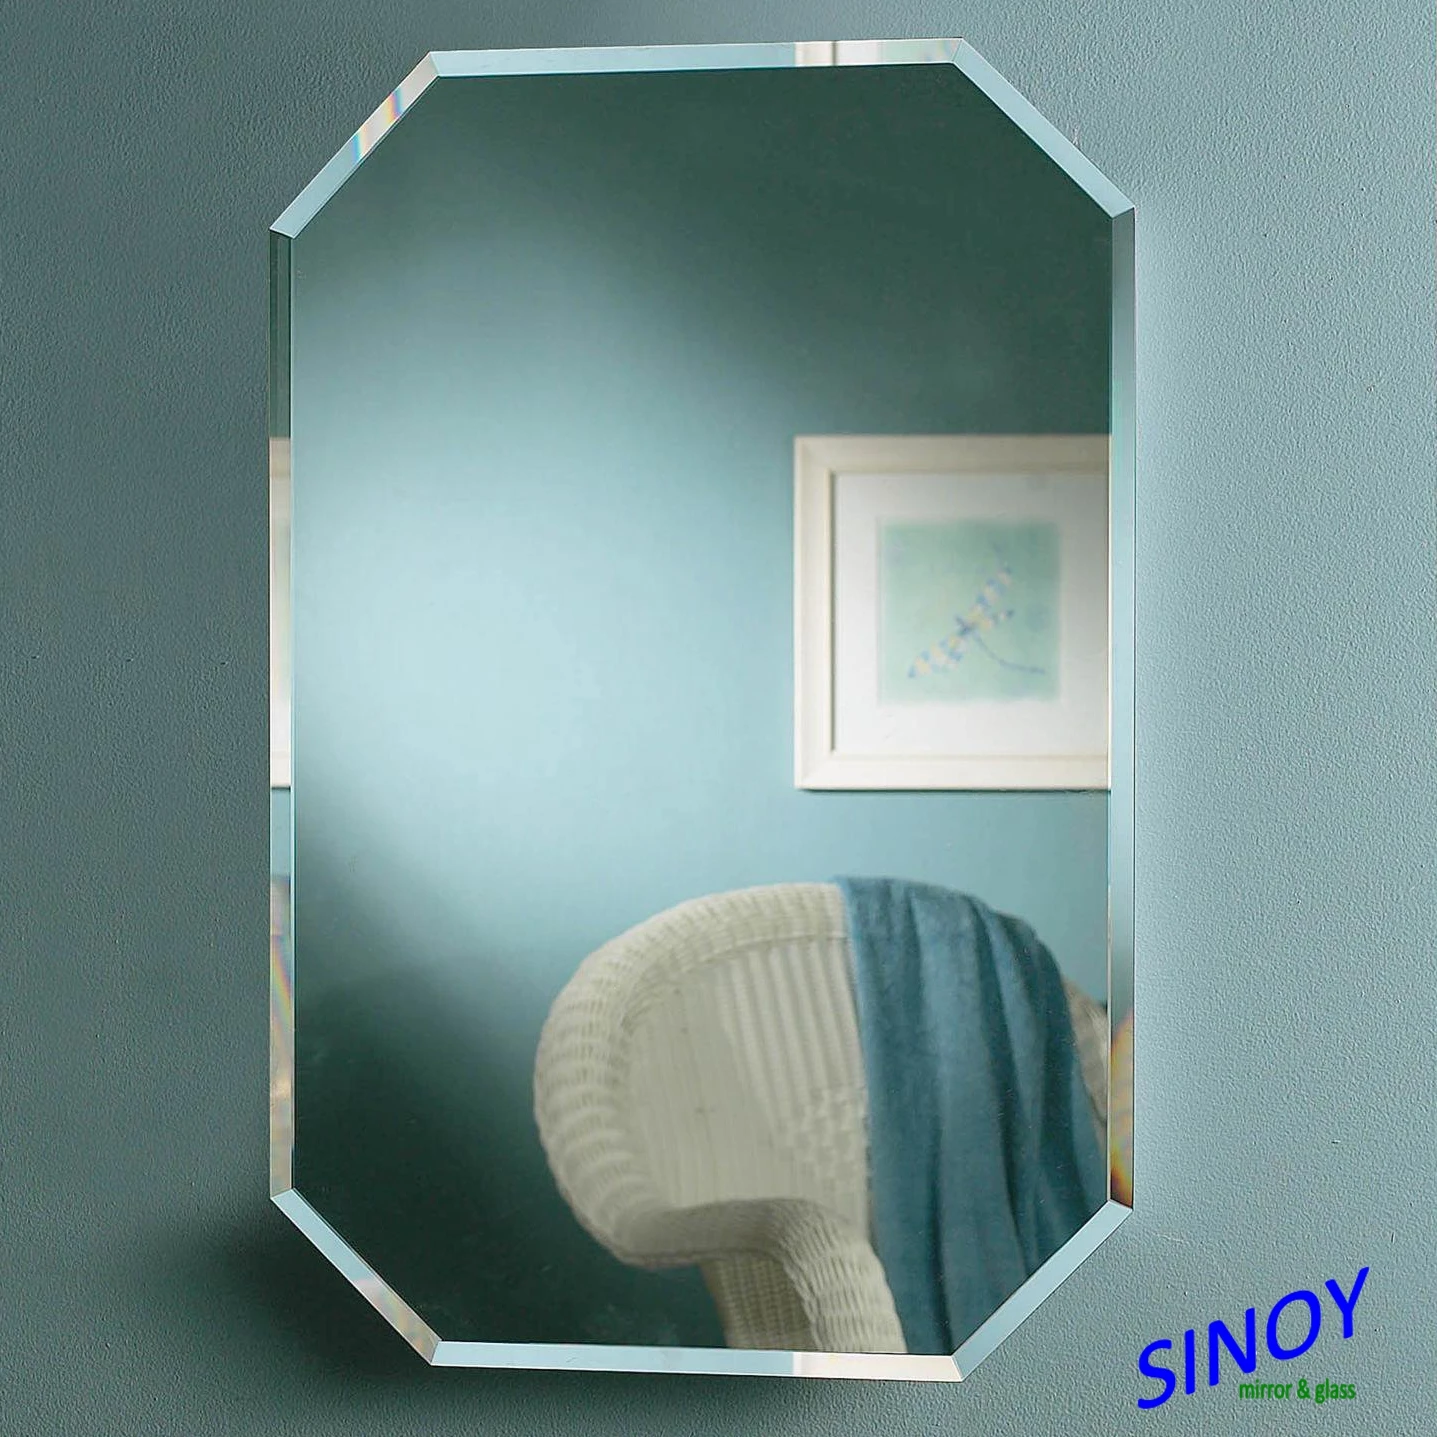 形状不同的浴室镜子与室内装饰的边缘